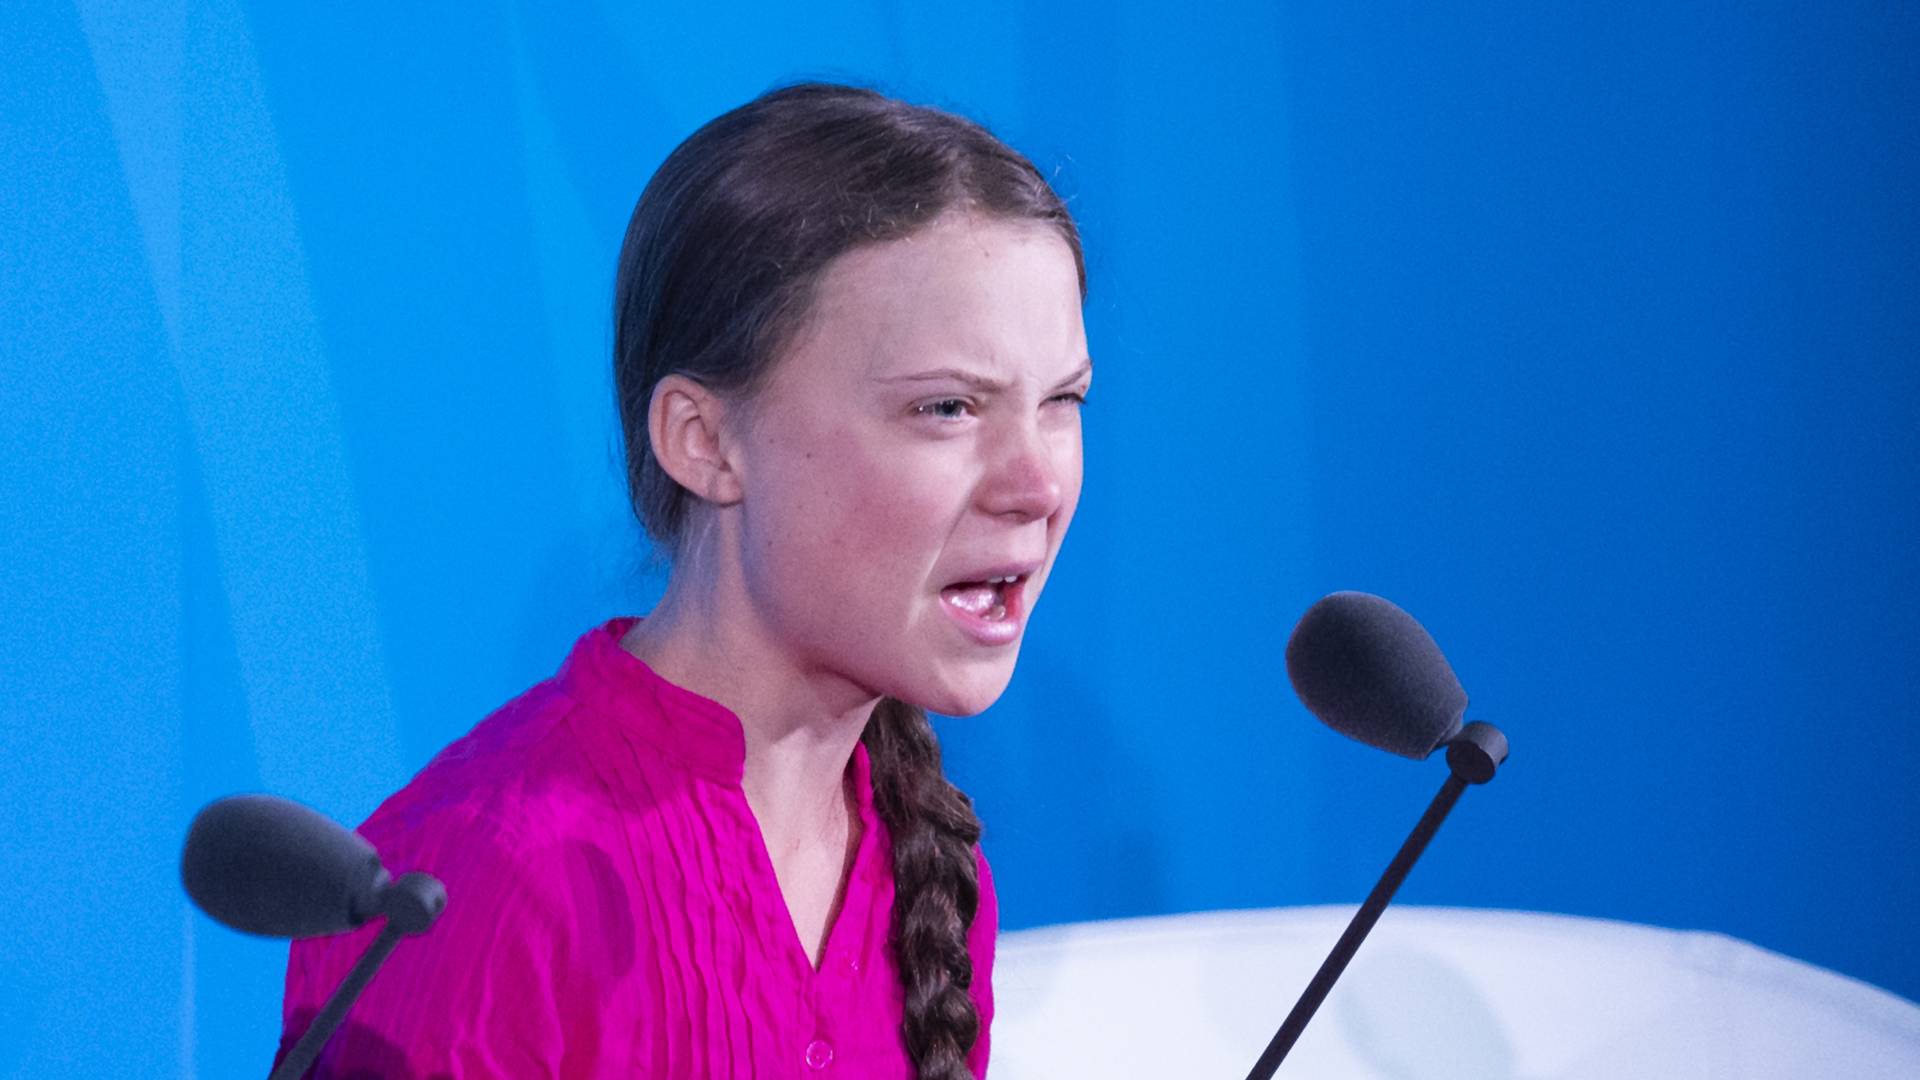 Govor tinejdžerke Grete Tunberg je šamar političarima